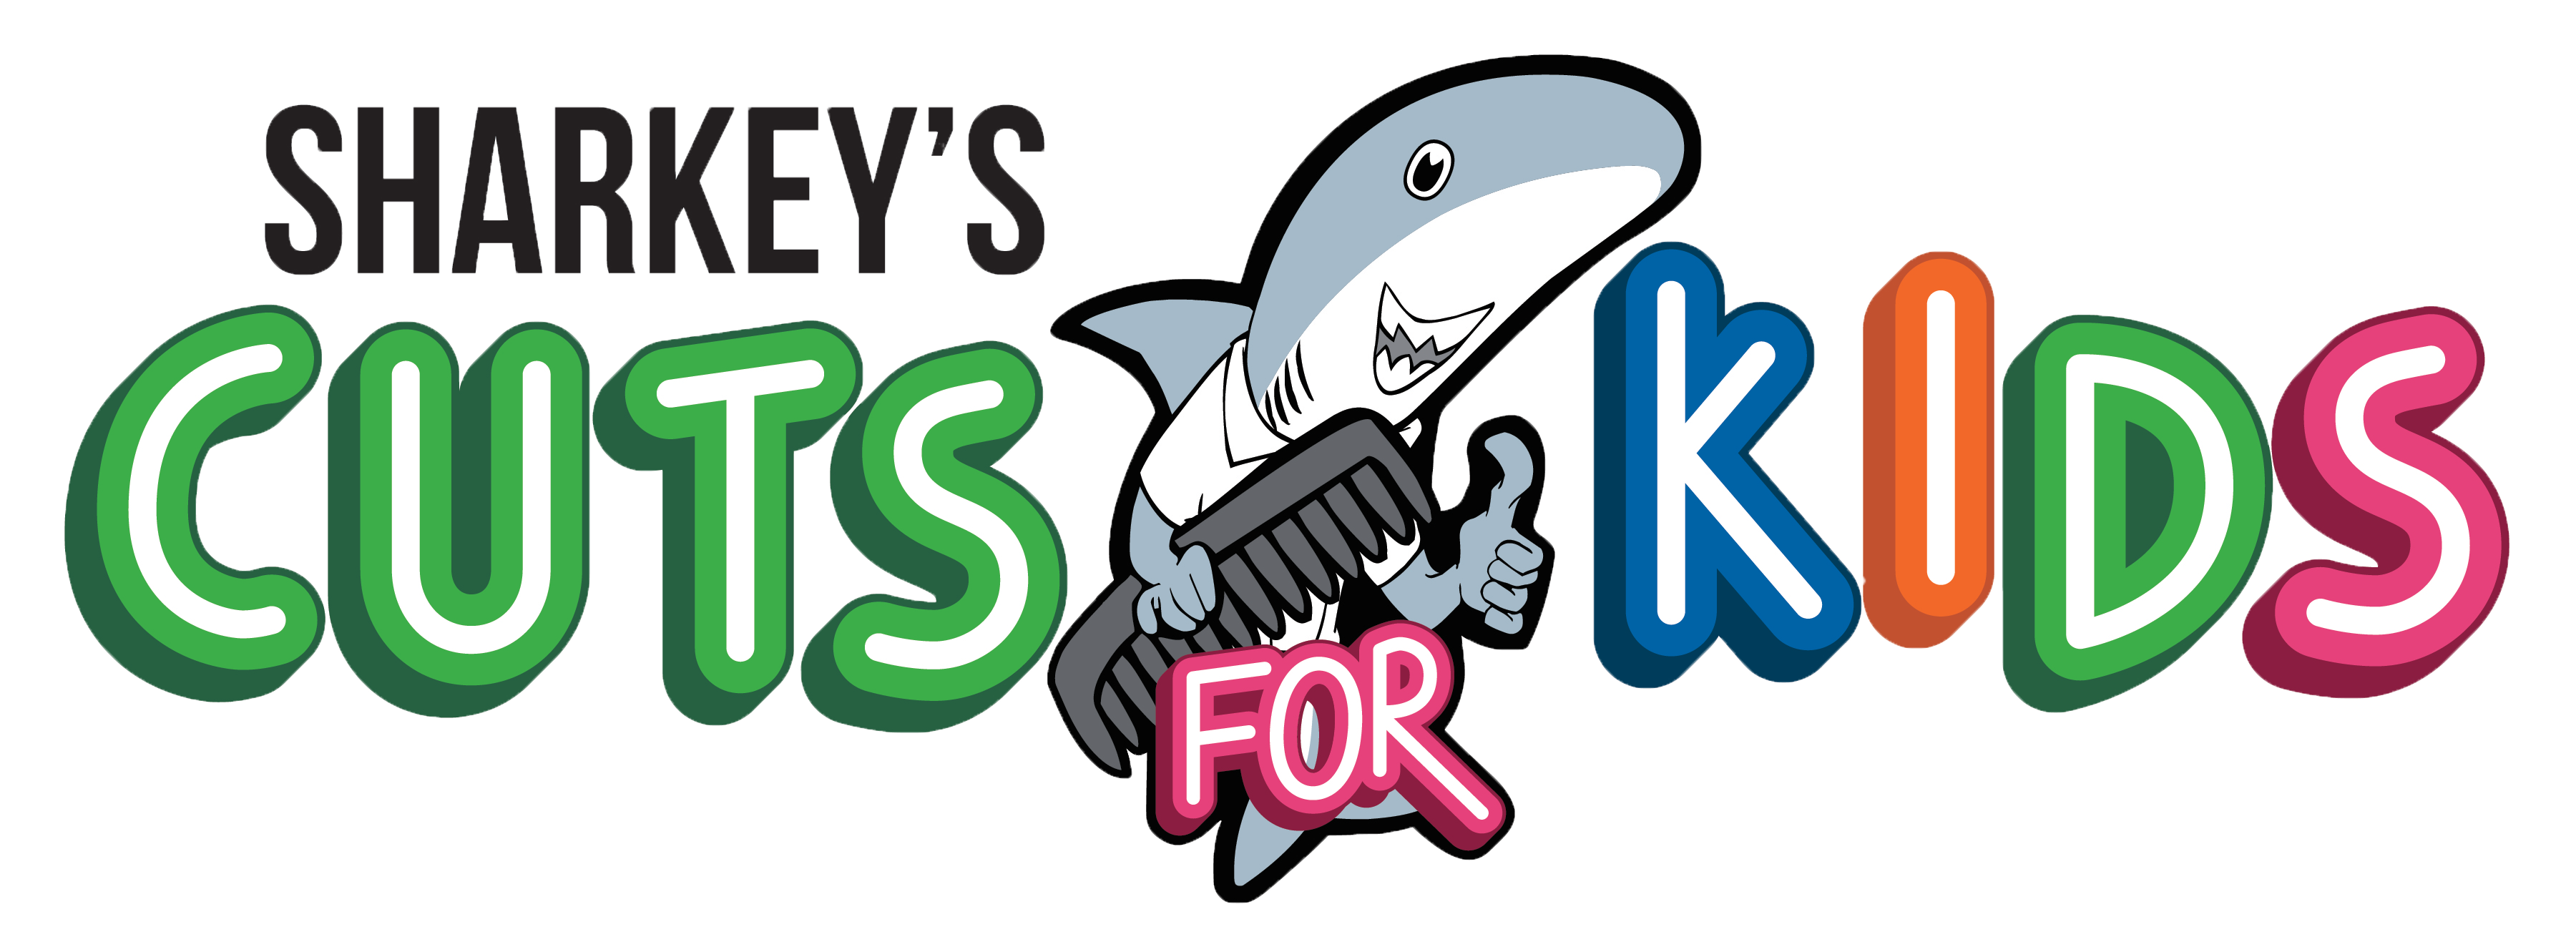 Sharkeys logo